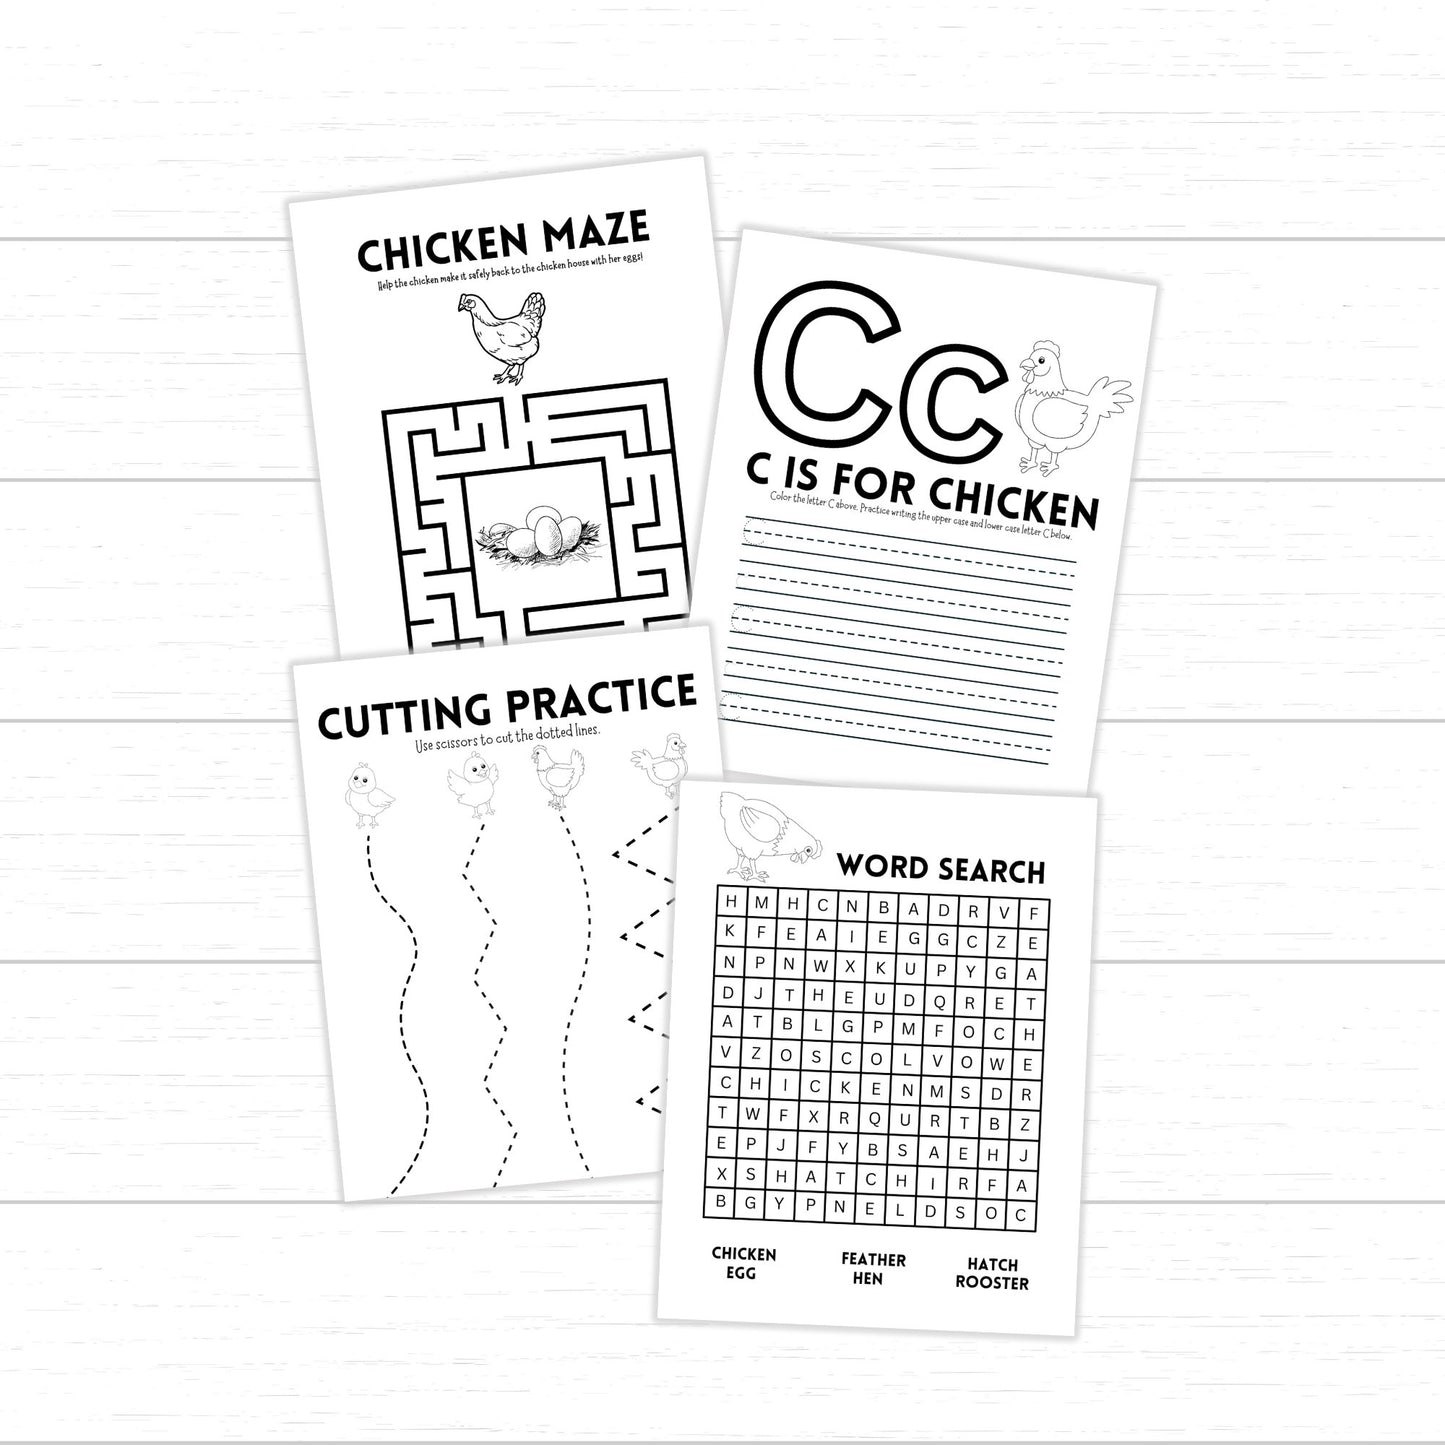 Chicken Activity Pack, Chicken Unit, Chicken Worksheets for Kids, Cute Chicken Activities, Printable Chicken Activities, Spring Chicken Unit